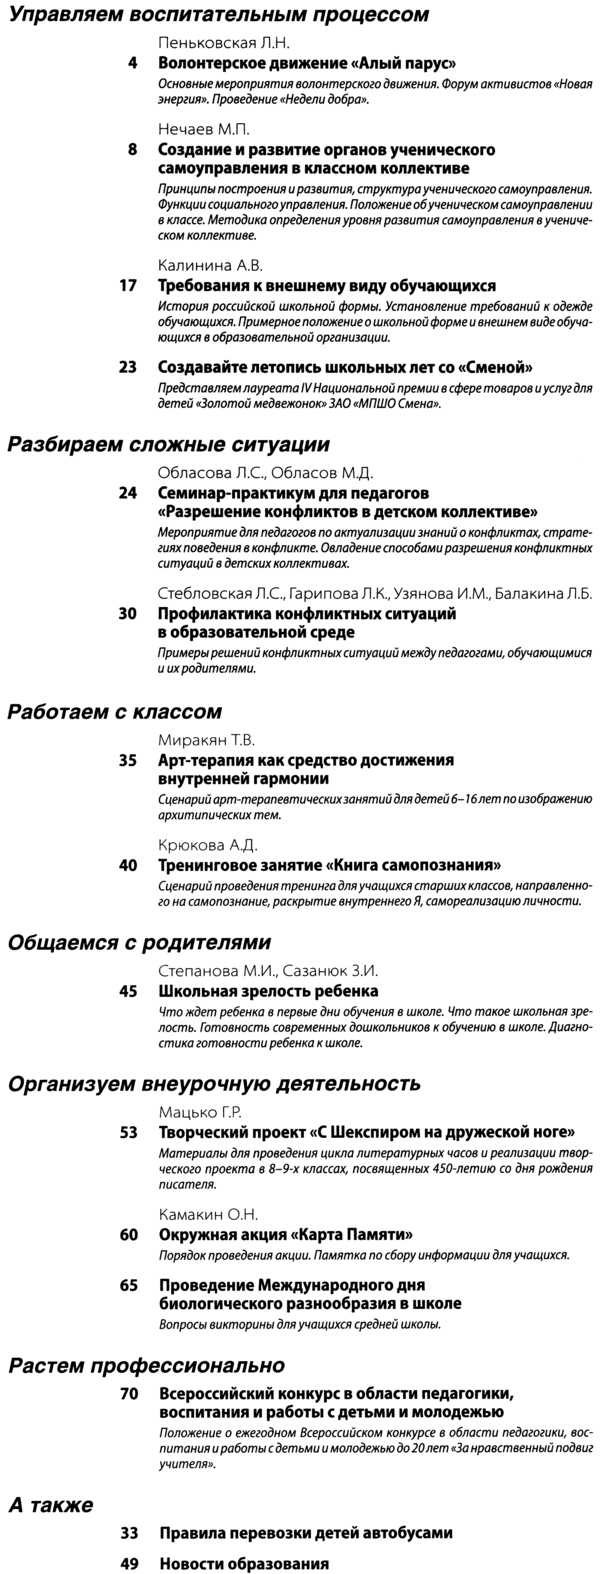 Справочник классного руководителя 2014-04.png